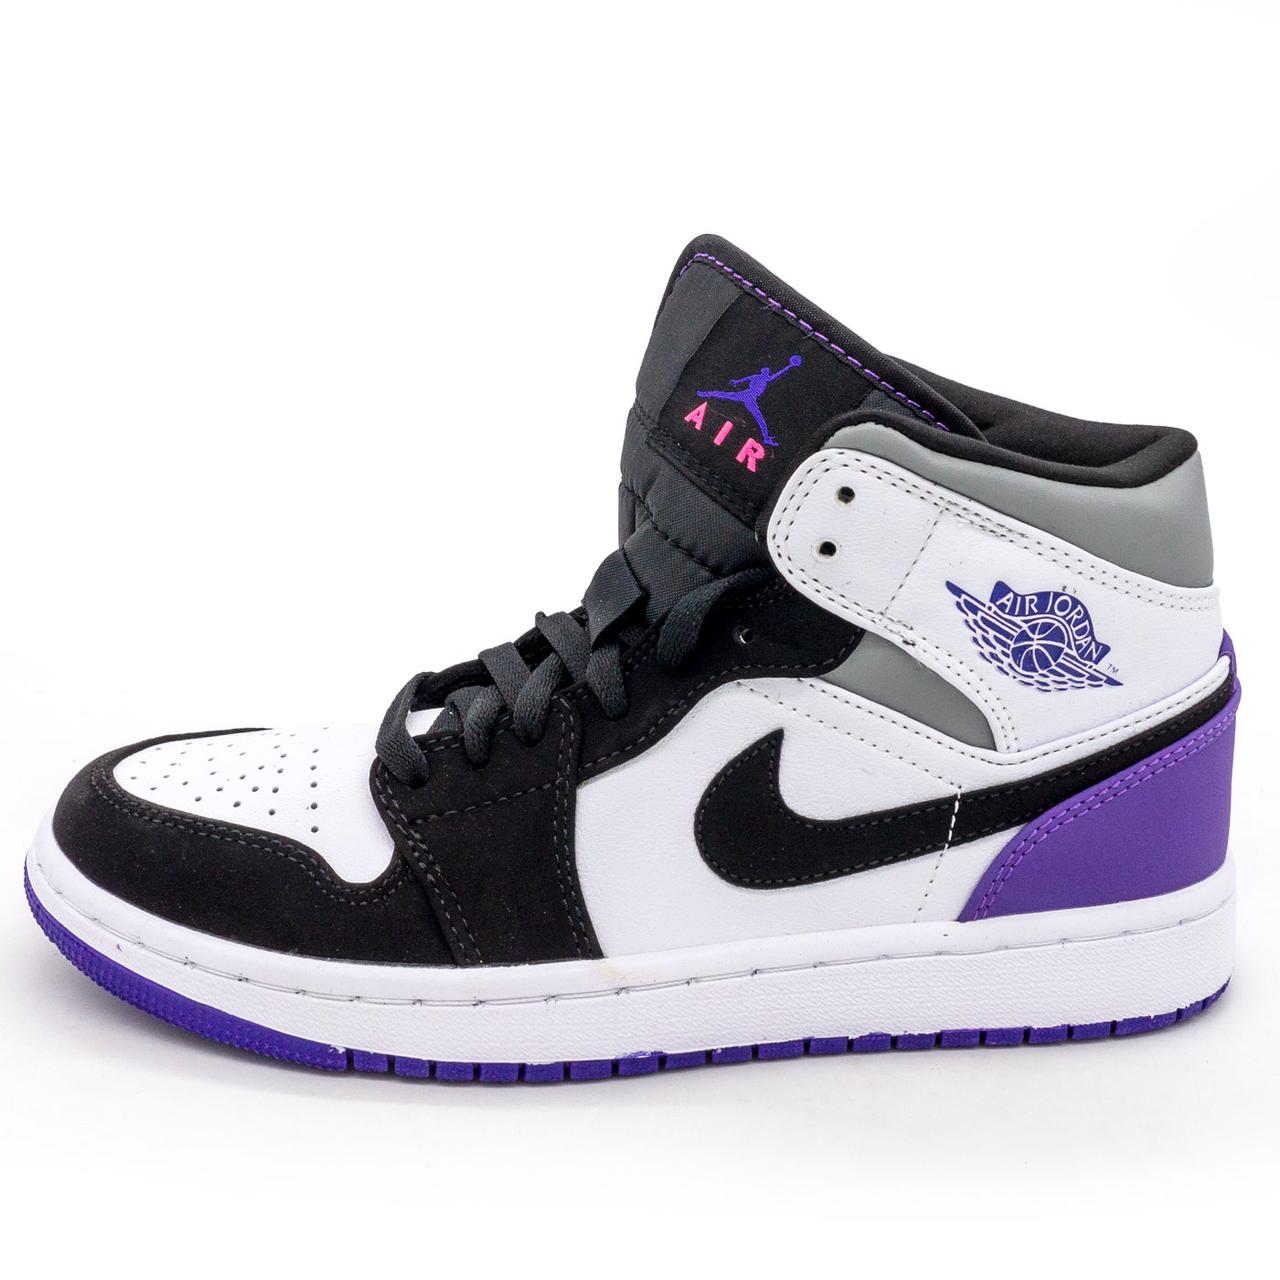 Високі білі з фіолетовим кросівки Nike Air Jordan 1. Топ якість! 37. Розміри в наявності: 37, 38, 40.